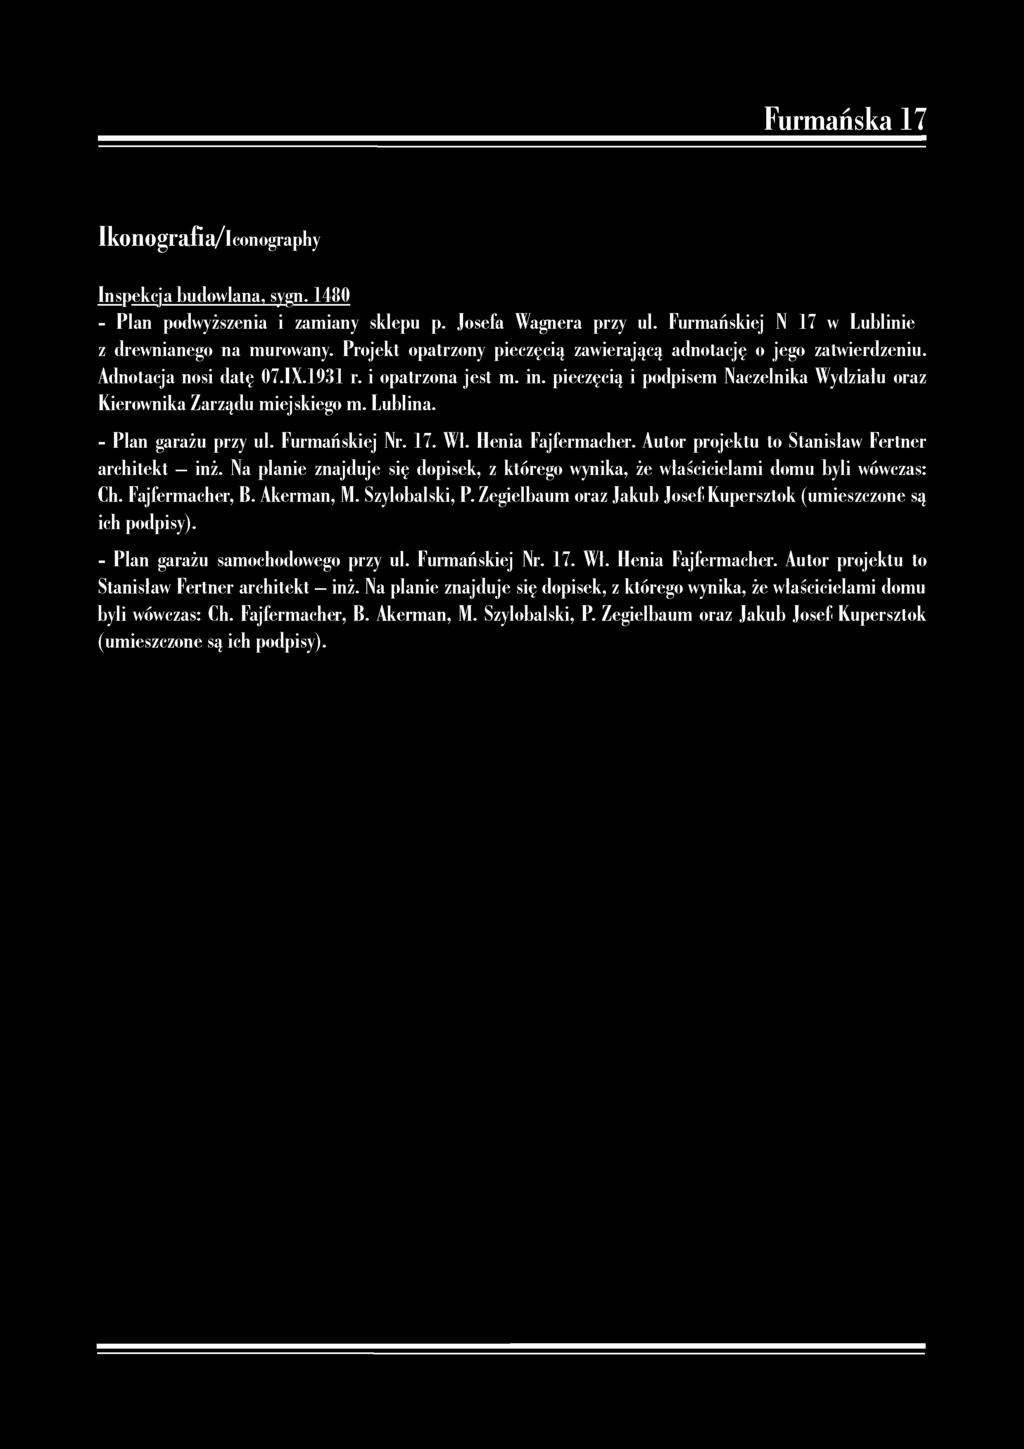 Ikonografia/Iconography Inspekcja budowlana, sygn. 1480 - Plan podwyższenia i zamiany sklepu p. Josefa Wagnera przy ul. Furmańskiej N 17 w Lublinie z drewnianego na murowany.